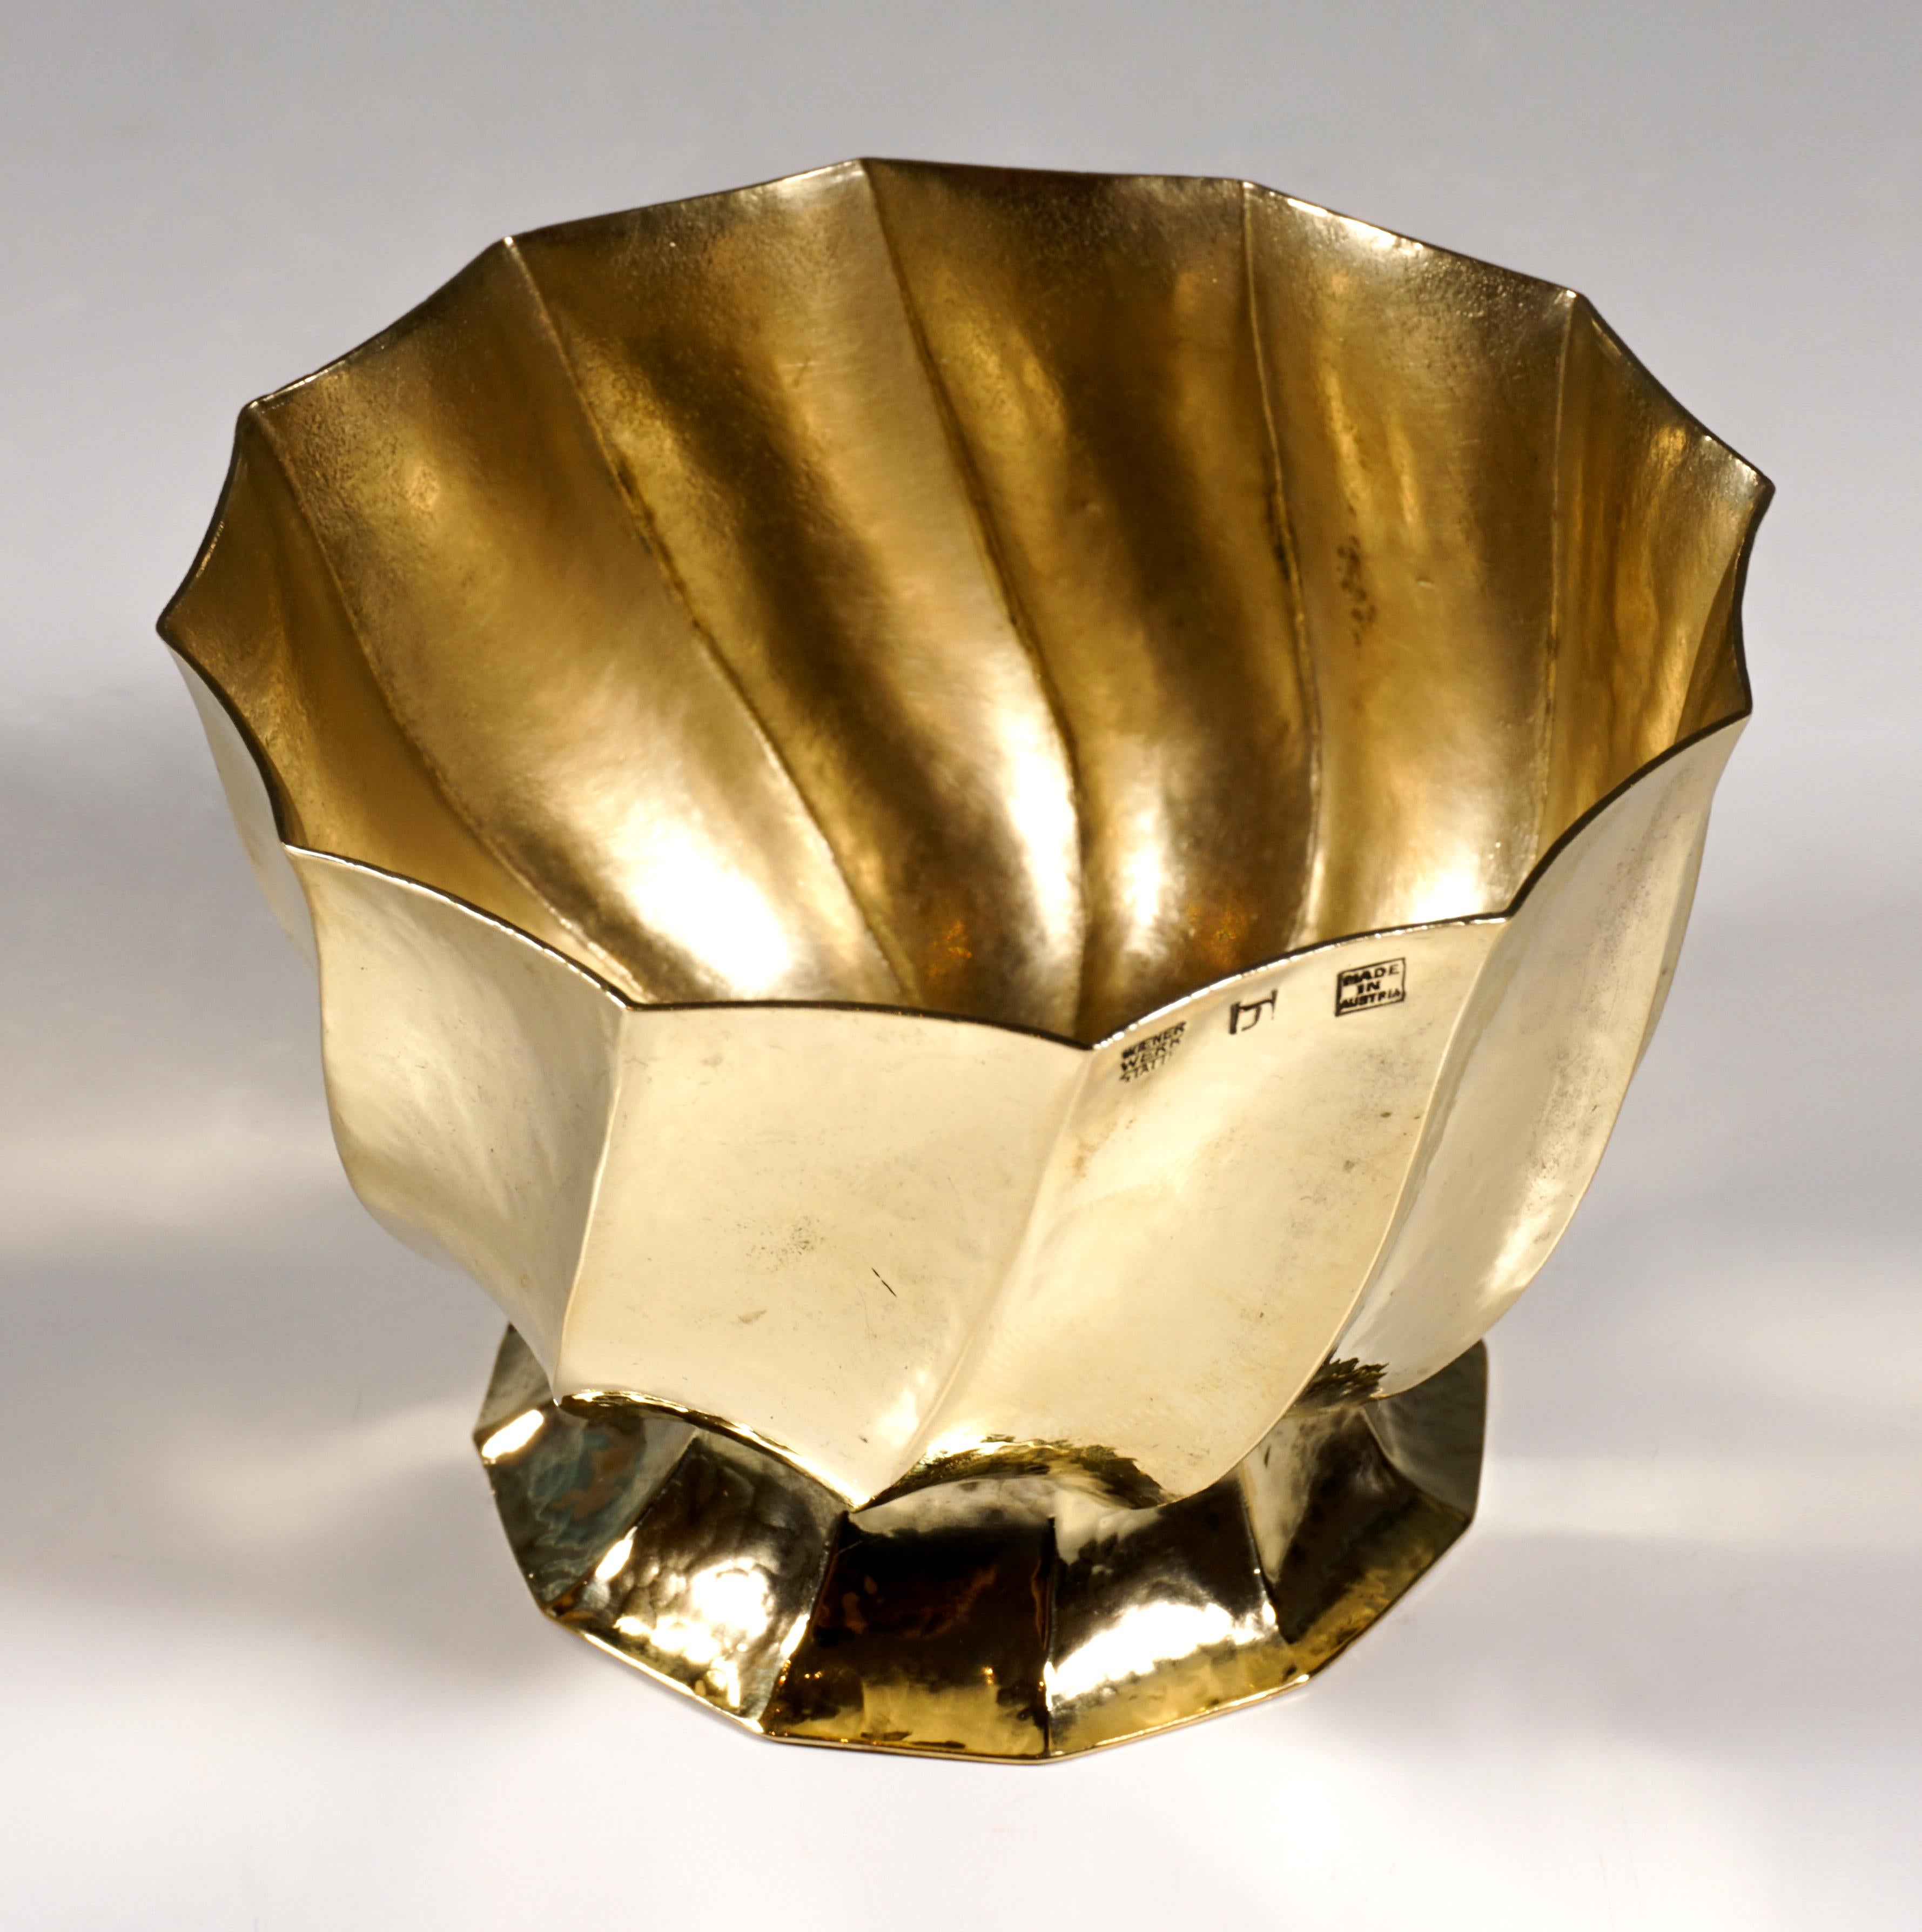 Austrian Wiener Werkstaette Hammered Brass Cigarette Bowl by Josef Hoffmann, circa 1920